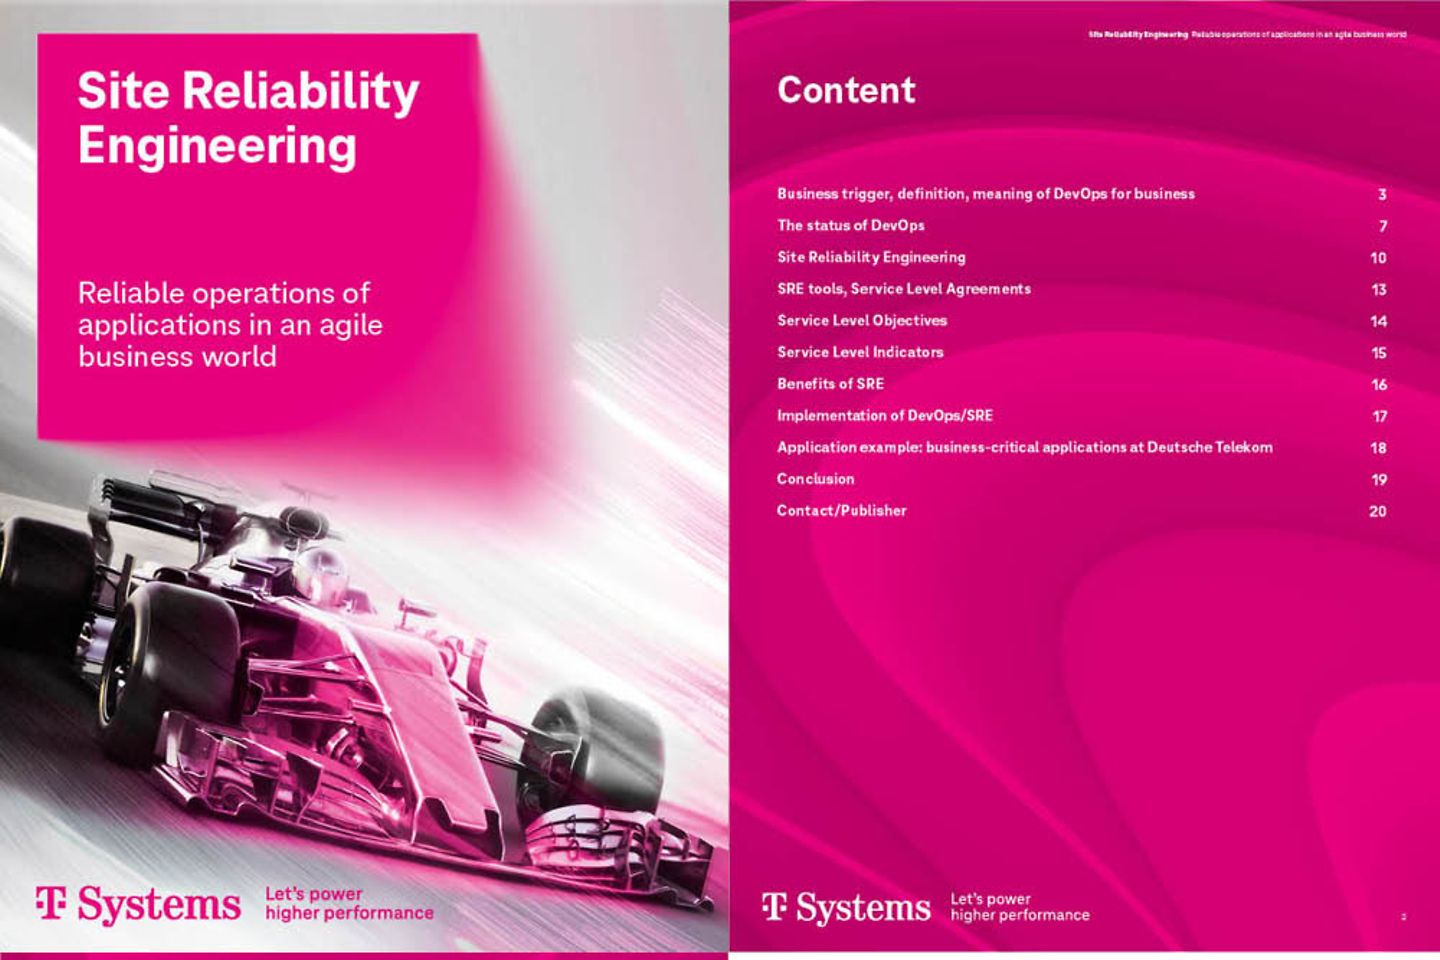 Captura de la portada y las tres páginas siguientes del whitepaper: Site Reliability Engineering 